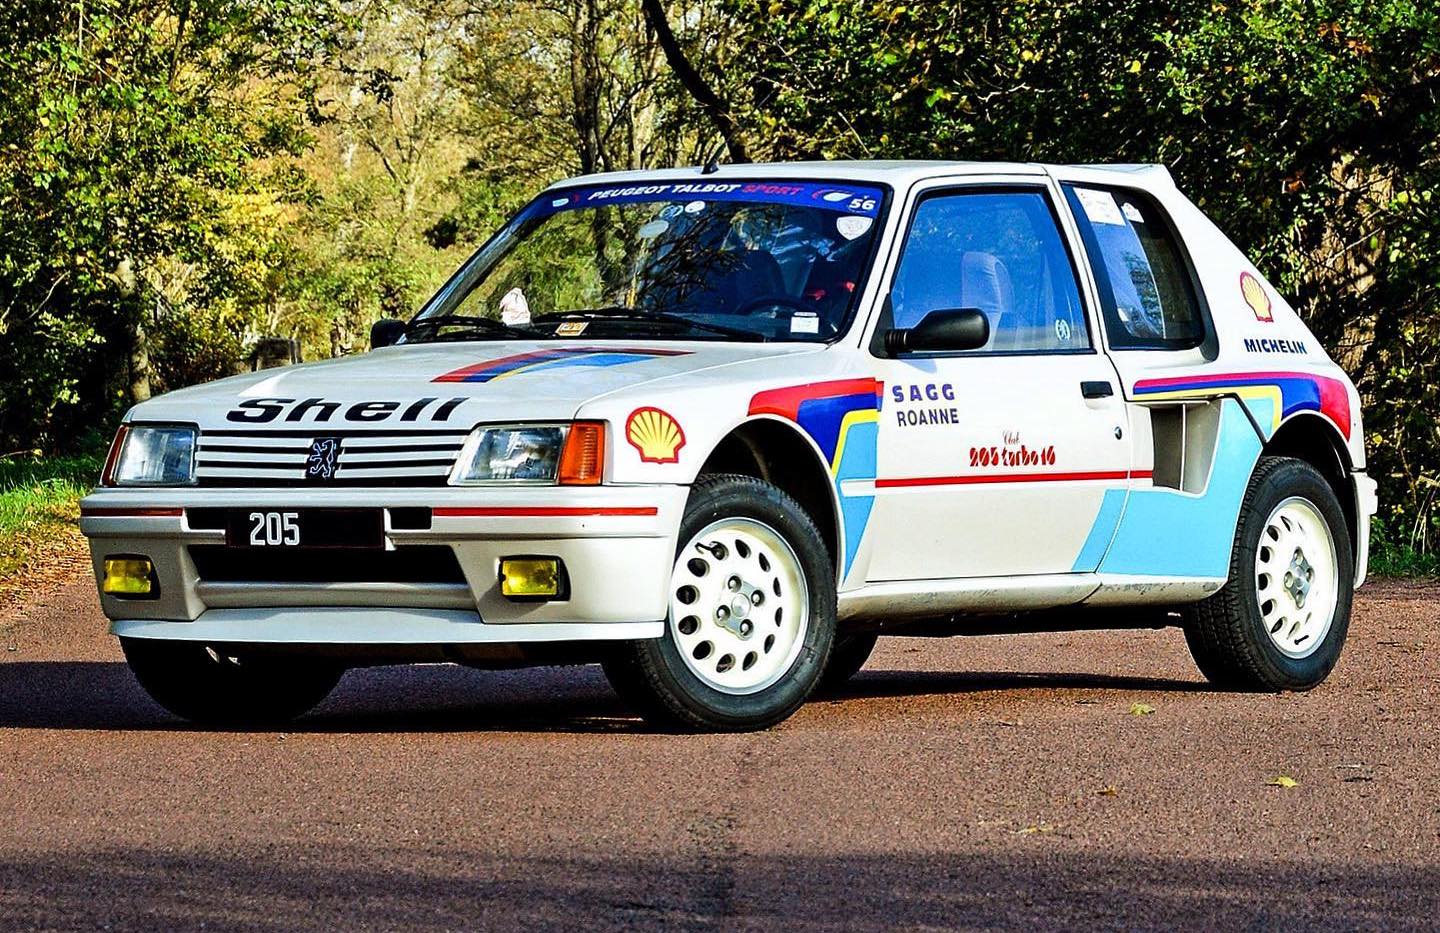 Peugeot 205 Turbo 16 un exemplaire de 1985 à vendre chez